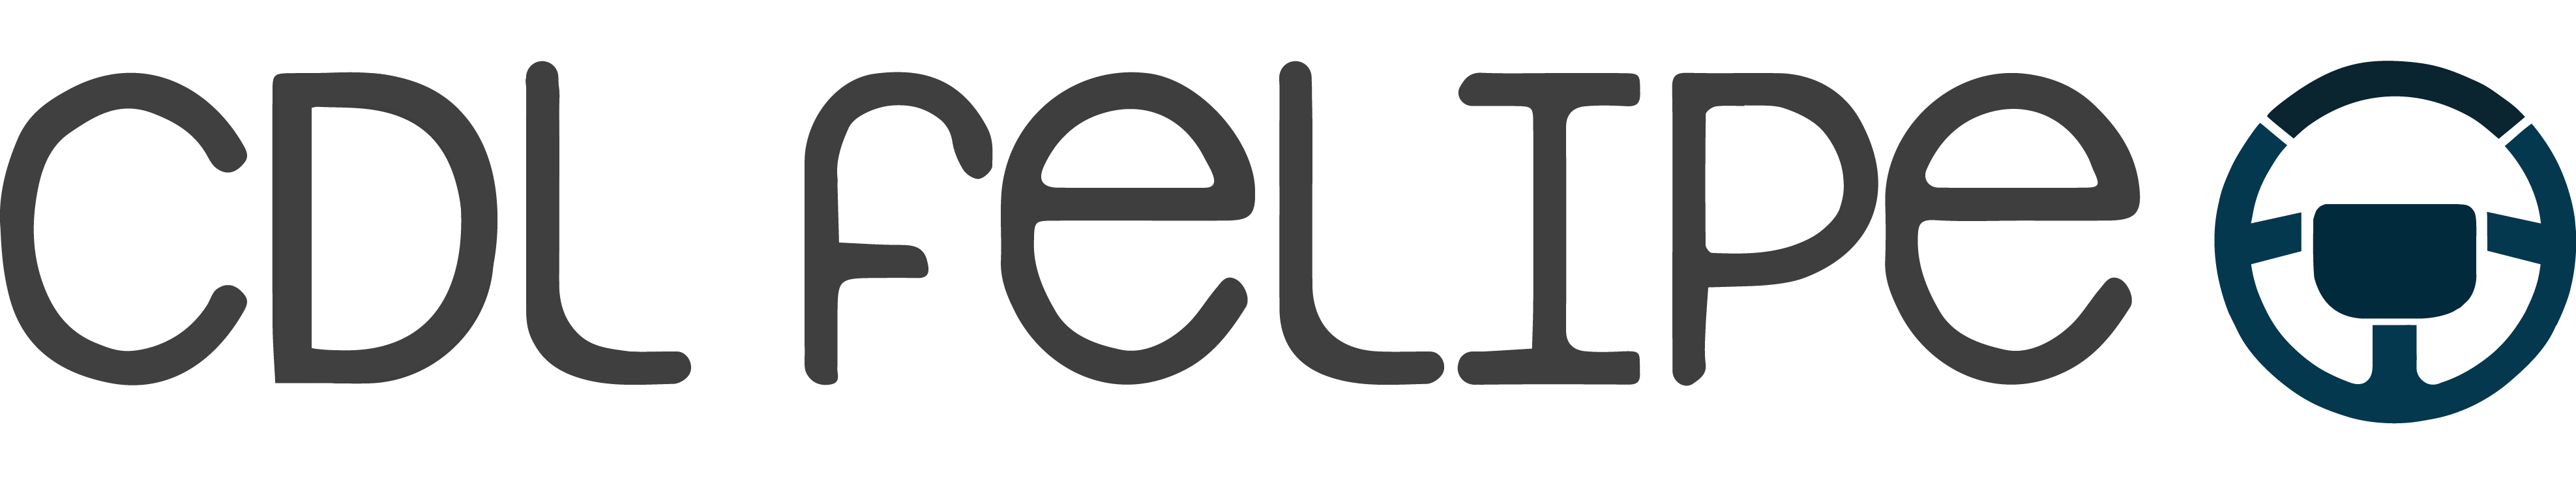 Felipe CDL Service – ELDT School Bus Theory